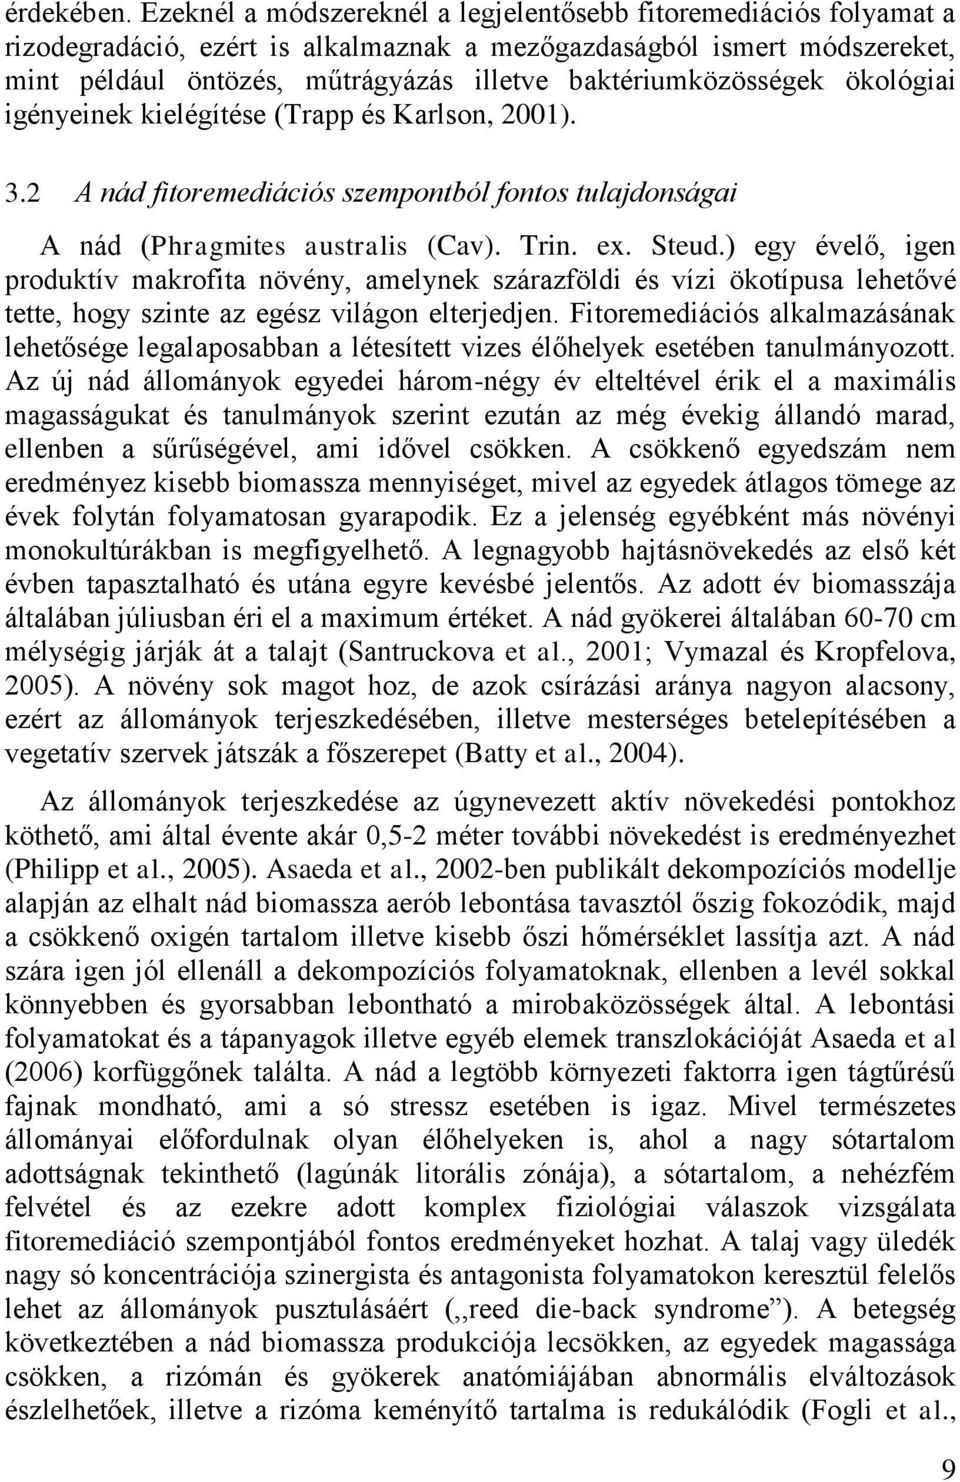 baktériumközösségek ökológiai igényeinek kielégítése (Trapp és Karlson, 2001). 3.2 A nád fitoremediációs szempontból fontos tulajdonságai A nád (Phragmites australis (Cav). Trin. ex. Steud.